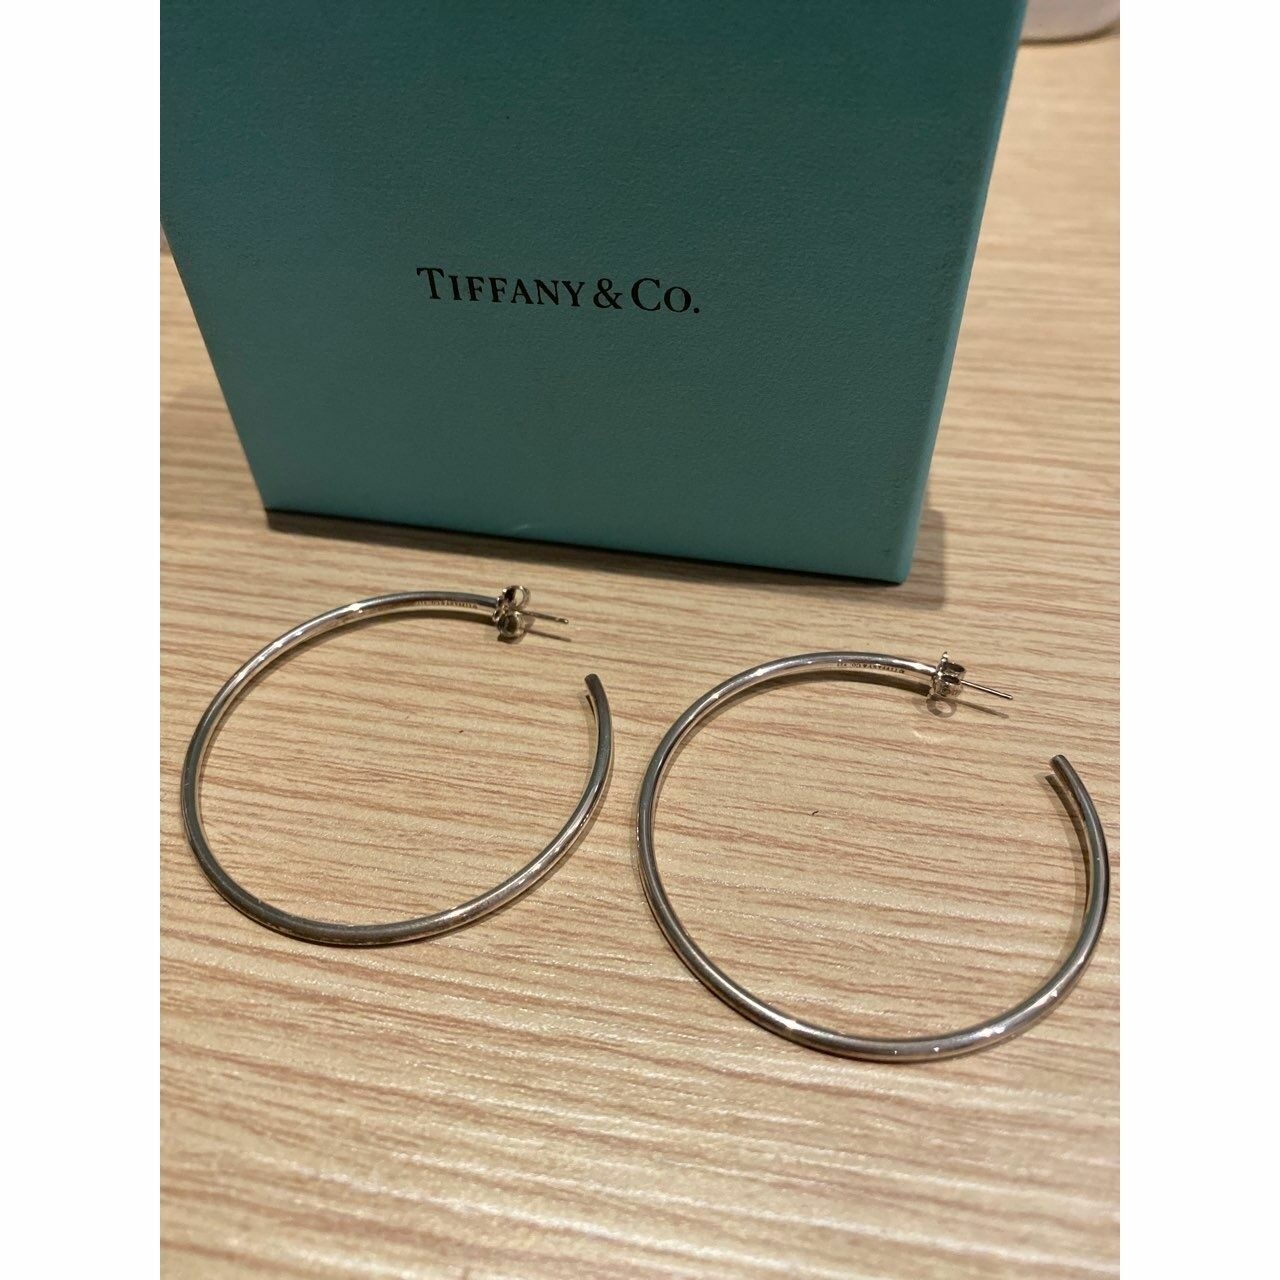 Tiffany & Co Sterling Silver Hoop Earrings